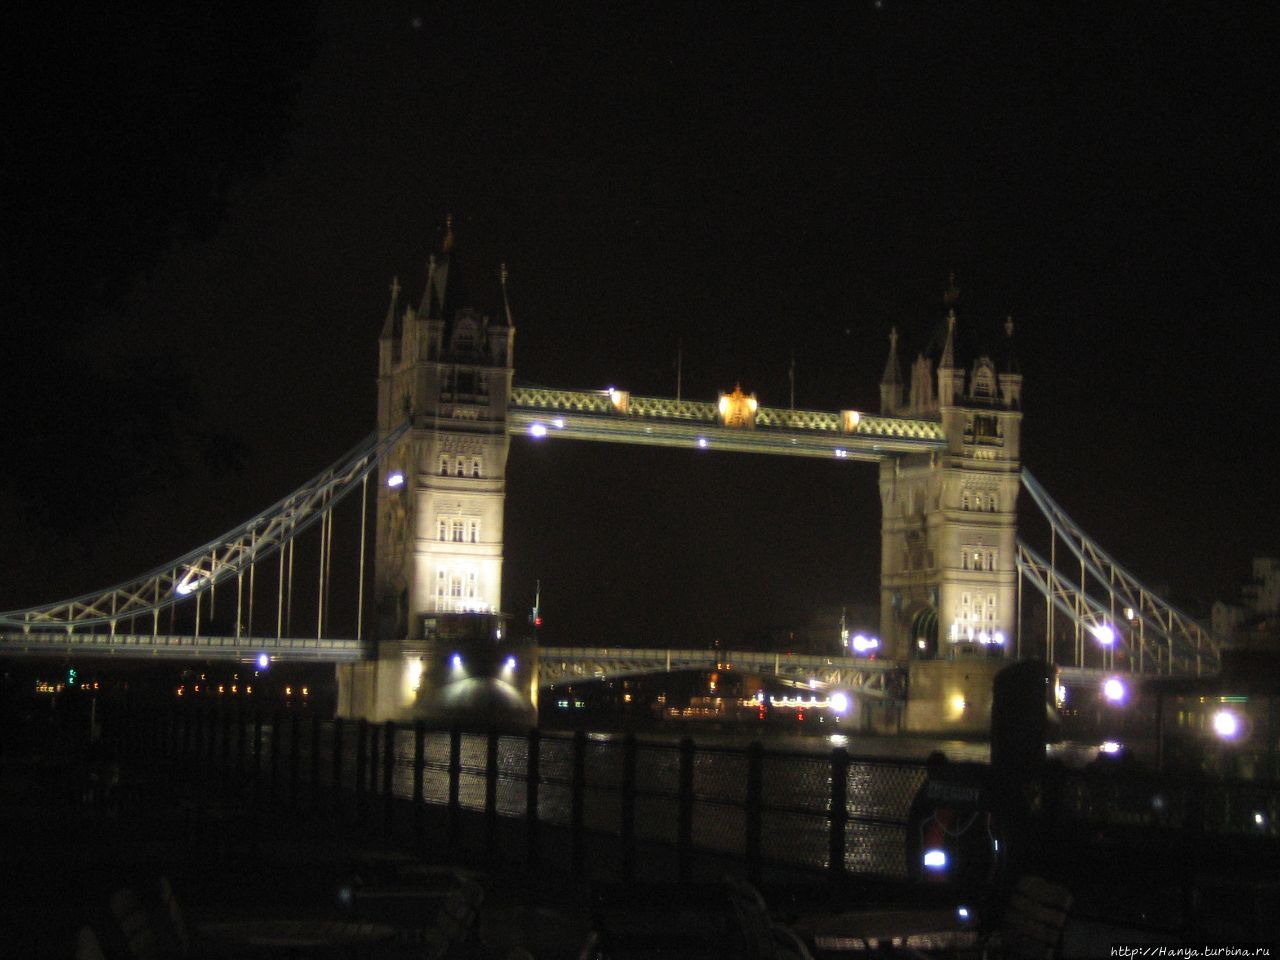 Лондон. Вид на вечернюю набережную Темзы и мост Тауэр Лондон, Великобритания